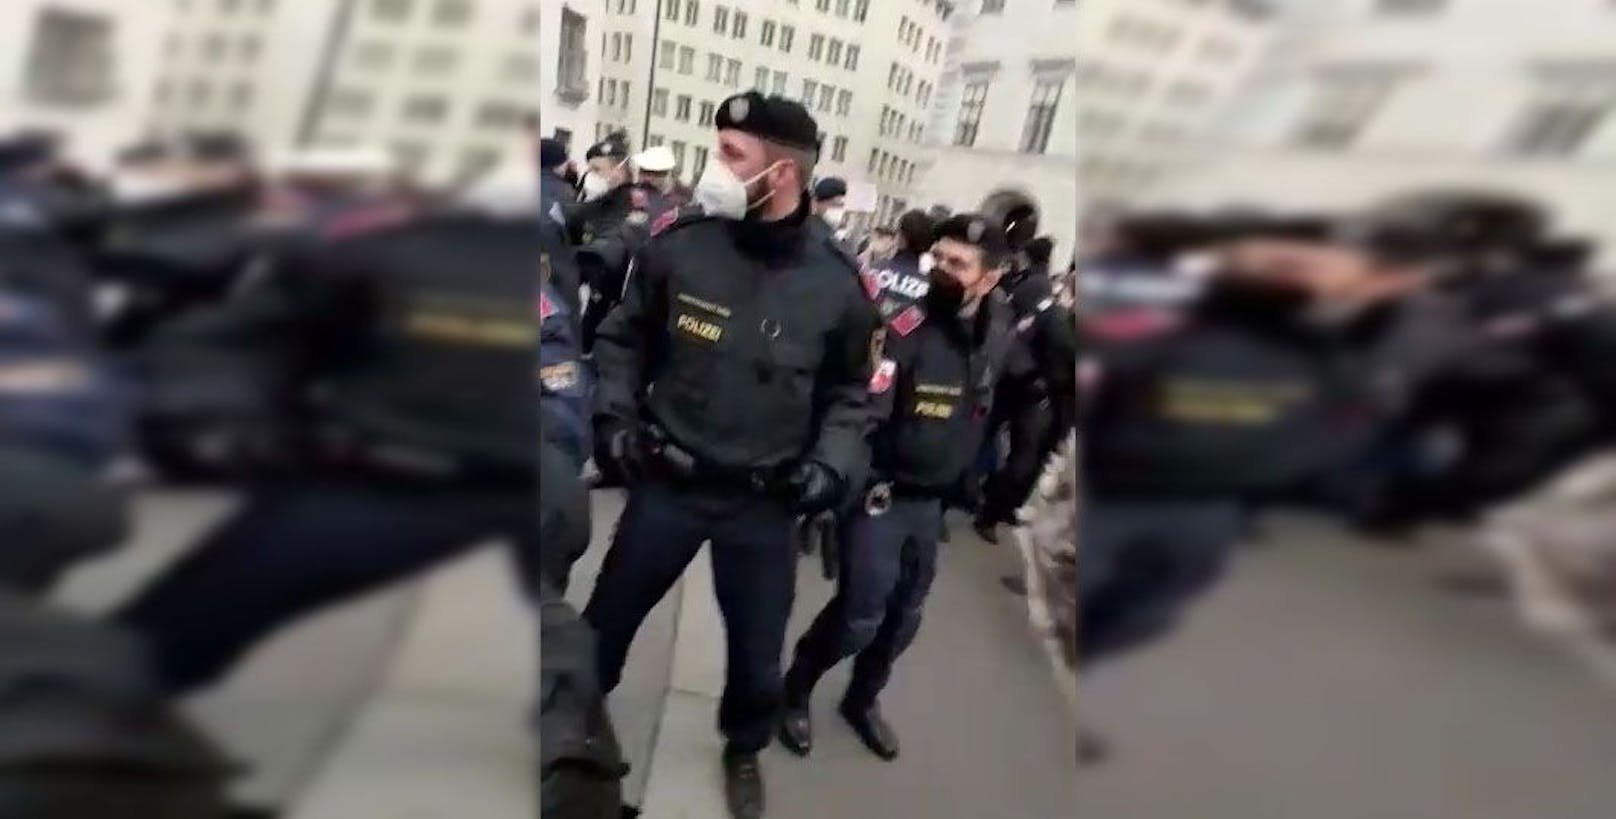 Die Polizisten mussten Wolfgang Sobotka (ÖVP) vor Corona-Demonstranten abschirmen. <a href="https://www.heute.at/s/impfgegner-rangeln-mit-polizei-vor-kanzleramt-100177658">Video&gt;&gt;&gt;</a>